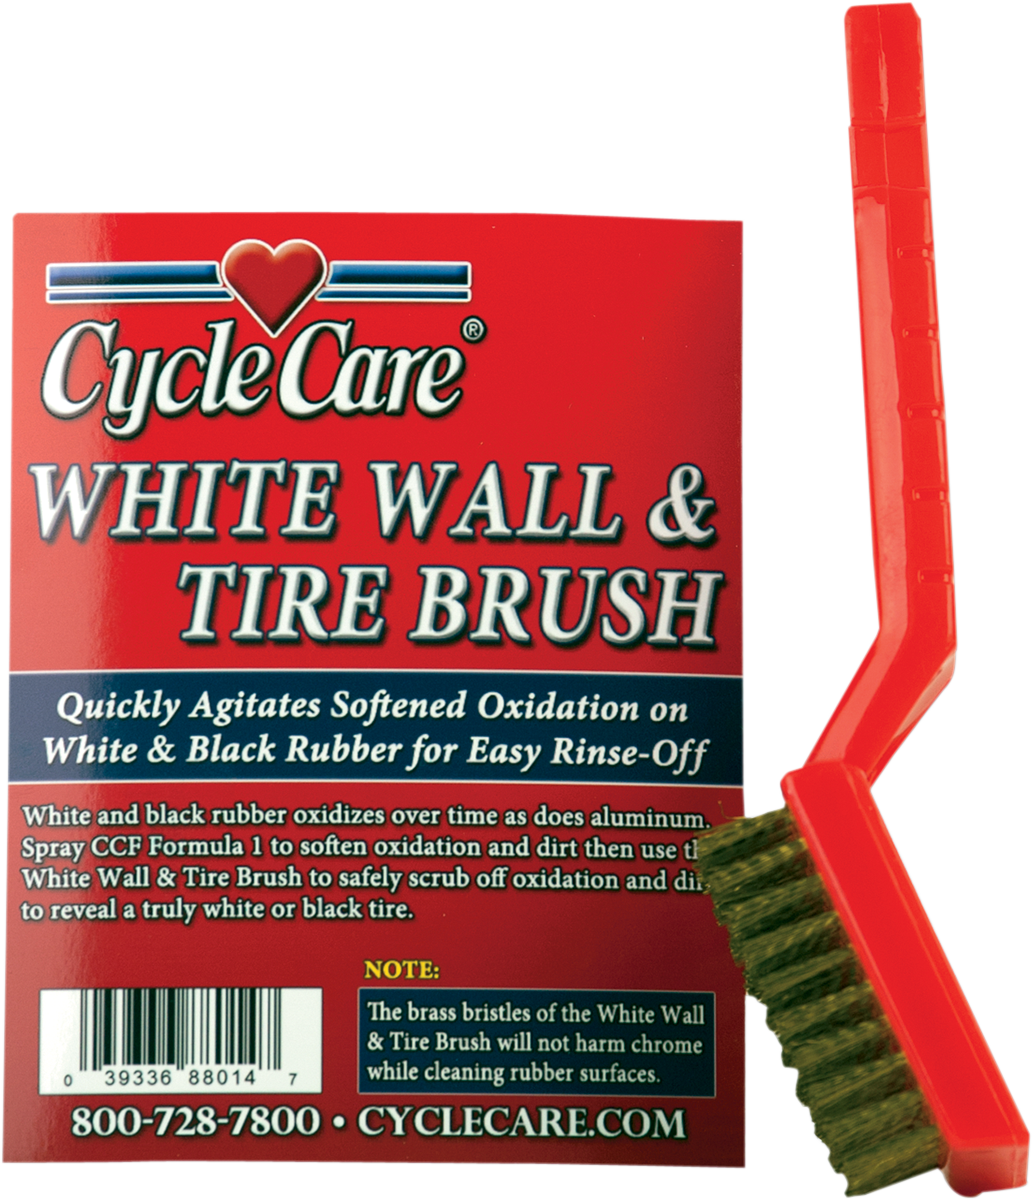 Whitewall Tire Brush